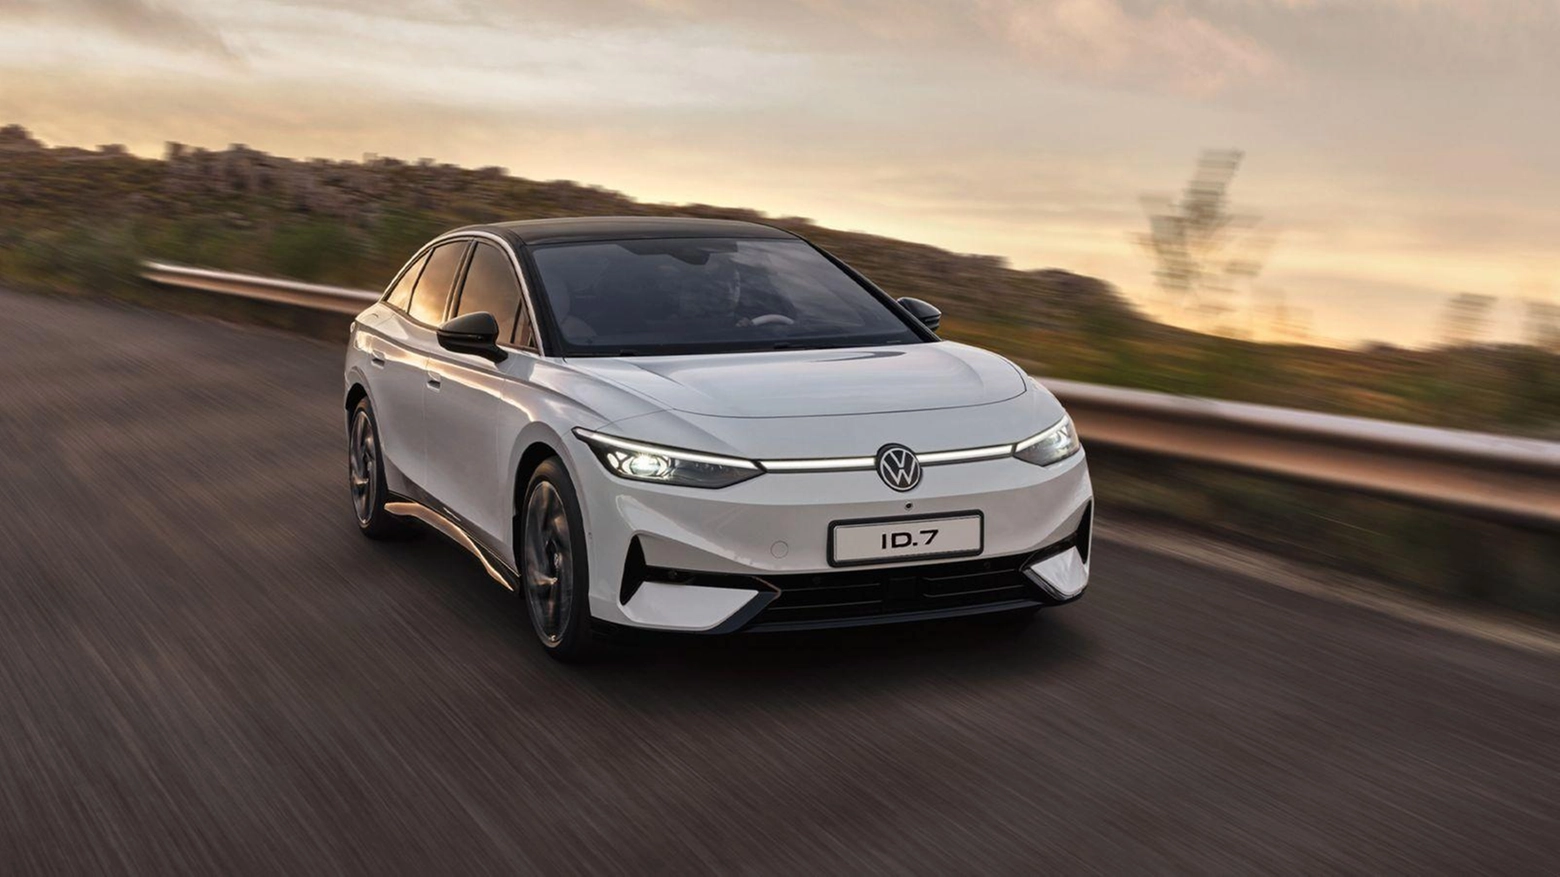 Silhouette da berlina fastback, tecnologie avanzate, propulsione elettrica e oltre 600 km con un pieno di energia. Volkswagen ID.7 si...